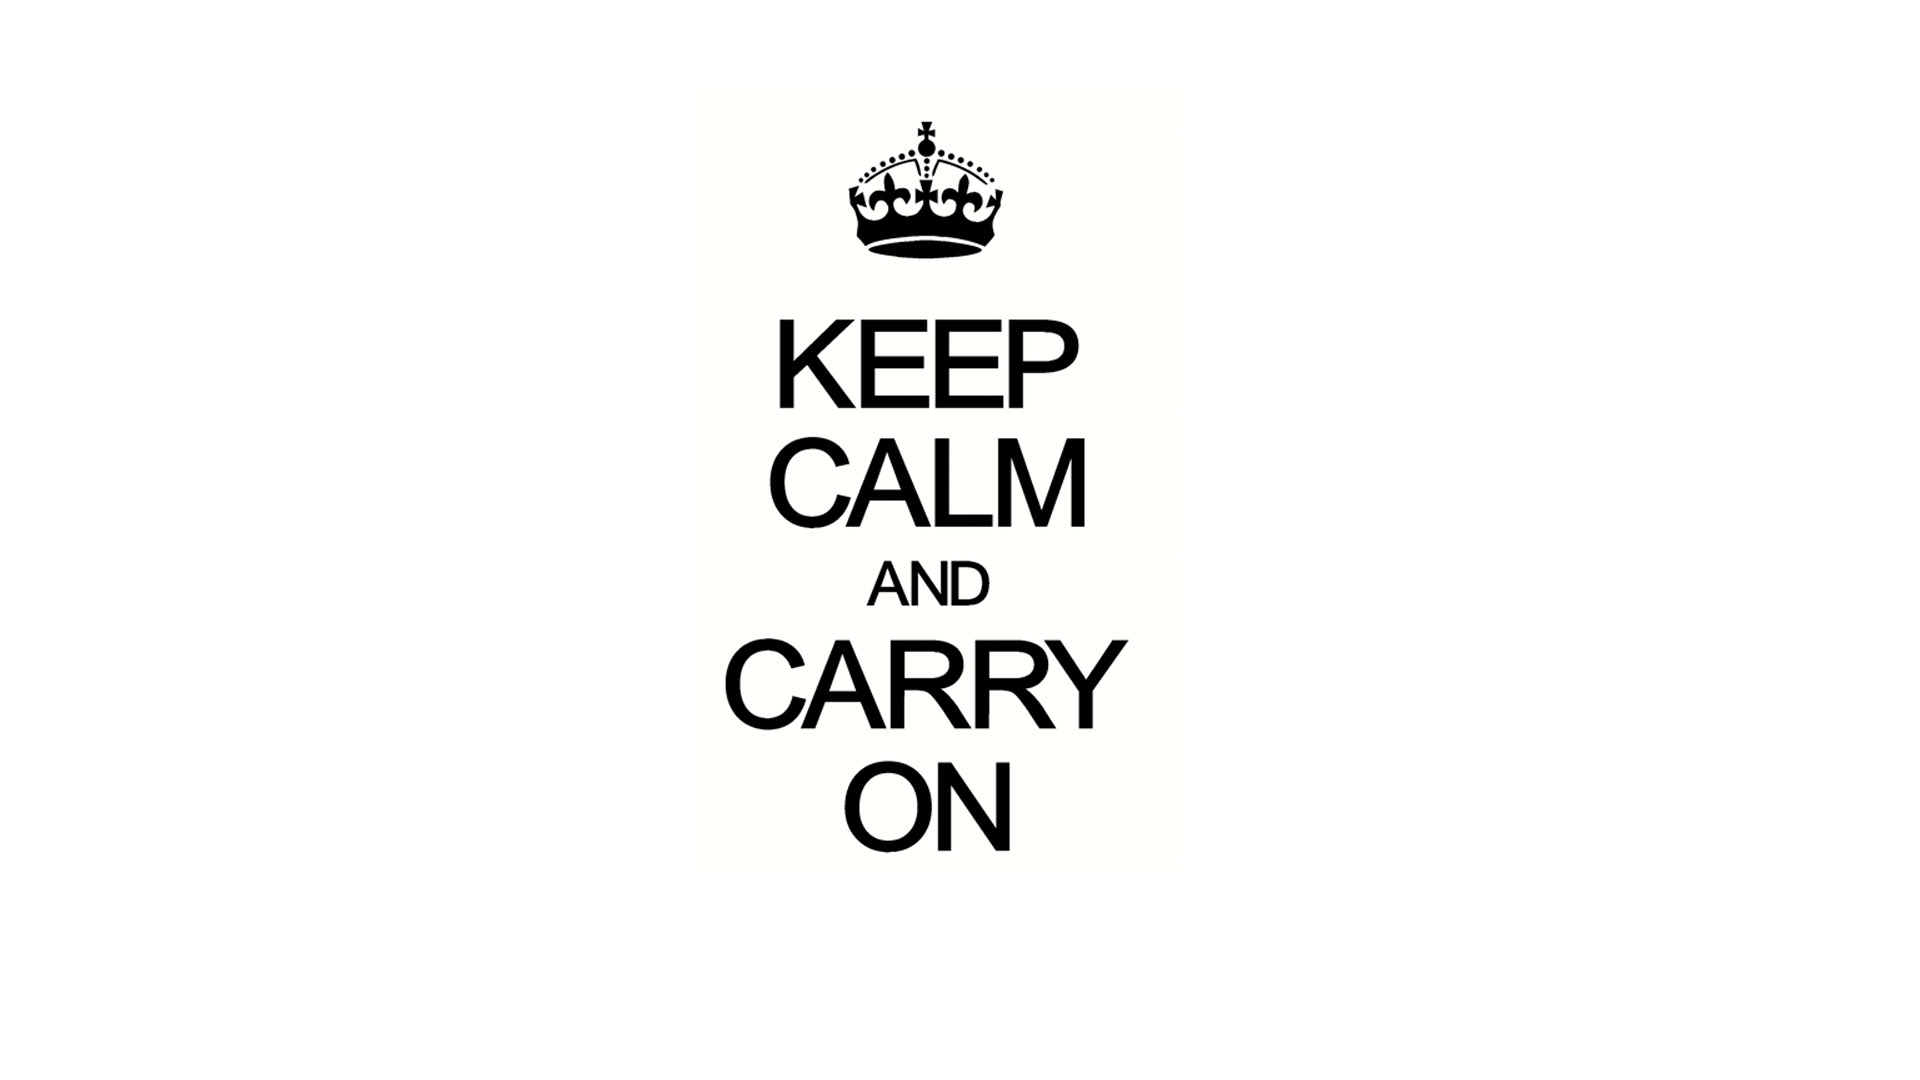 "Keep calm and carry on" fue una estrategia de la monarquía durante la Segunda Guerra Mundial como elemento tranquilizador